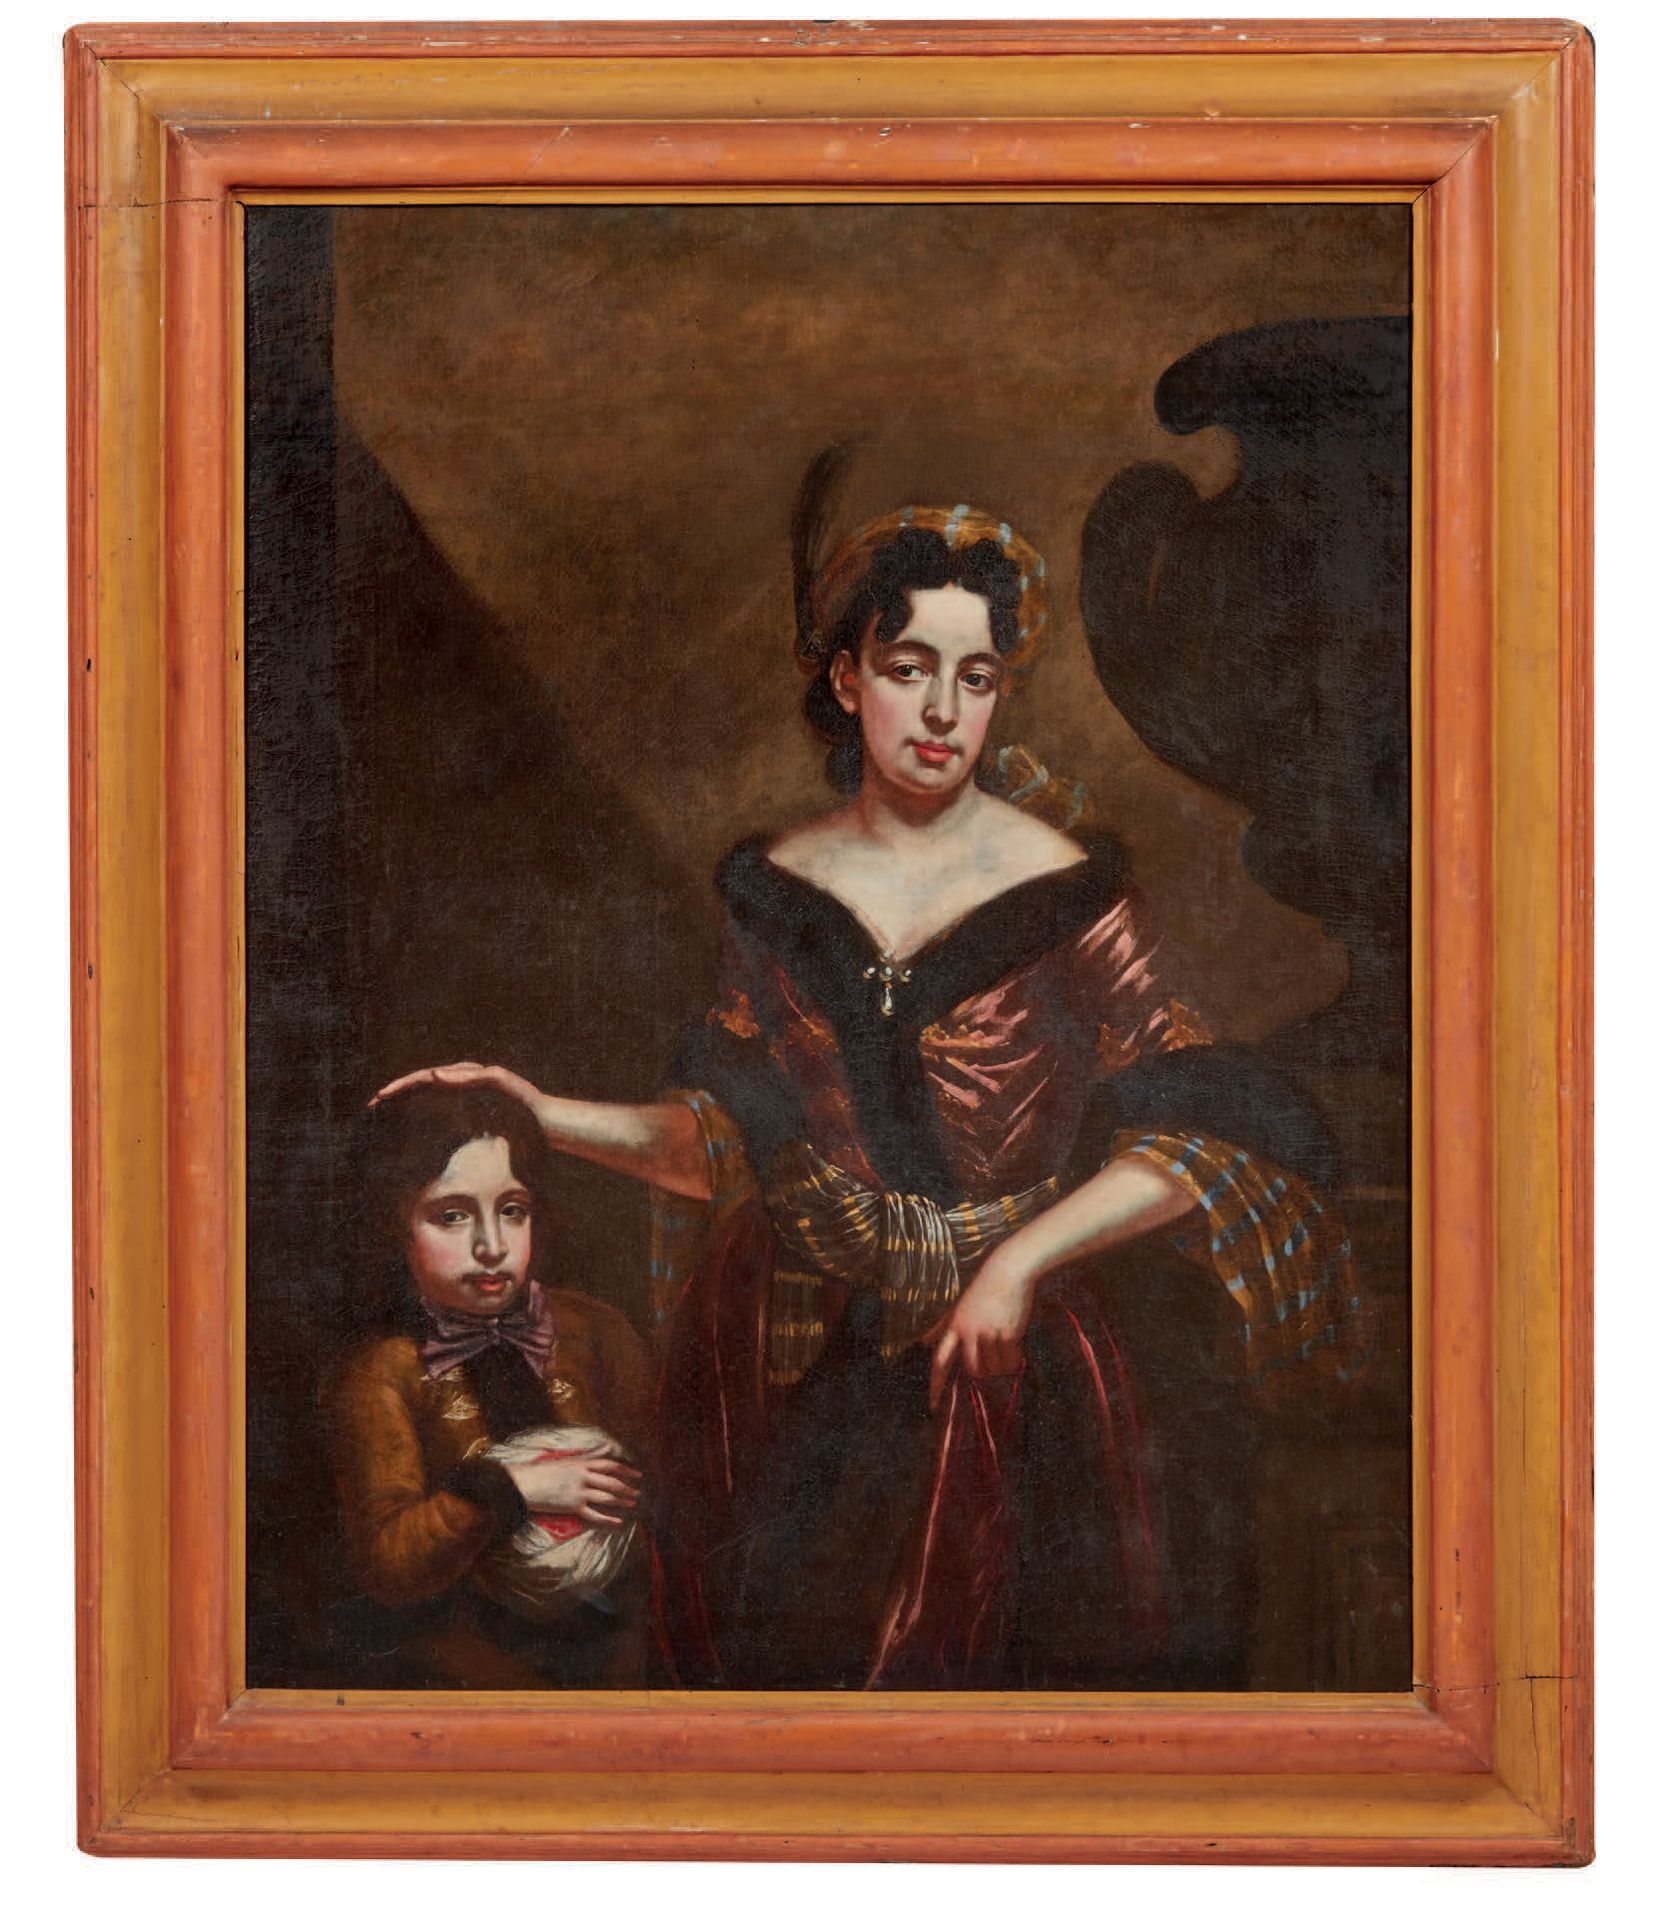 Scuola del XVII secolo 
Portrait einer Dame mit Kind
Öl auf Leinwand
Schöner Rah&hellip;